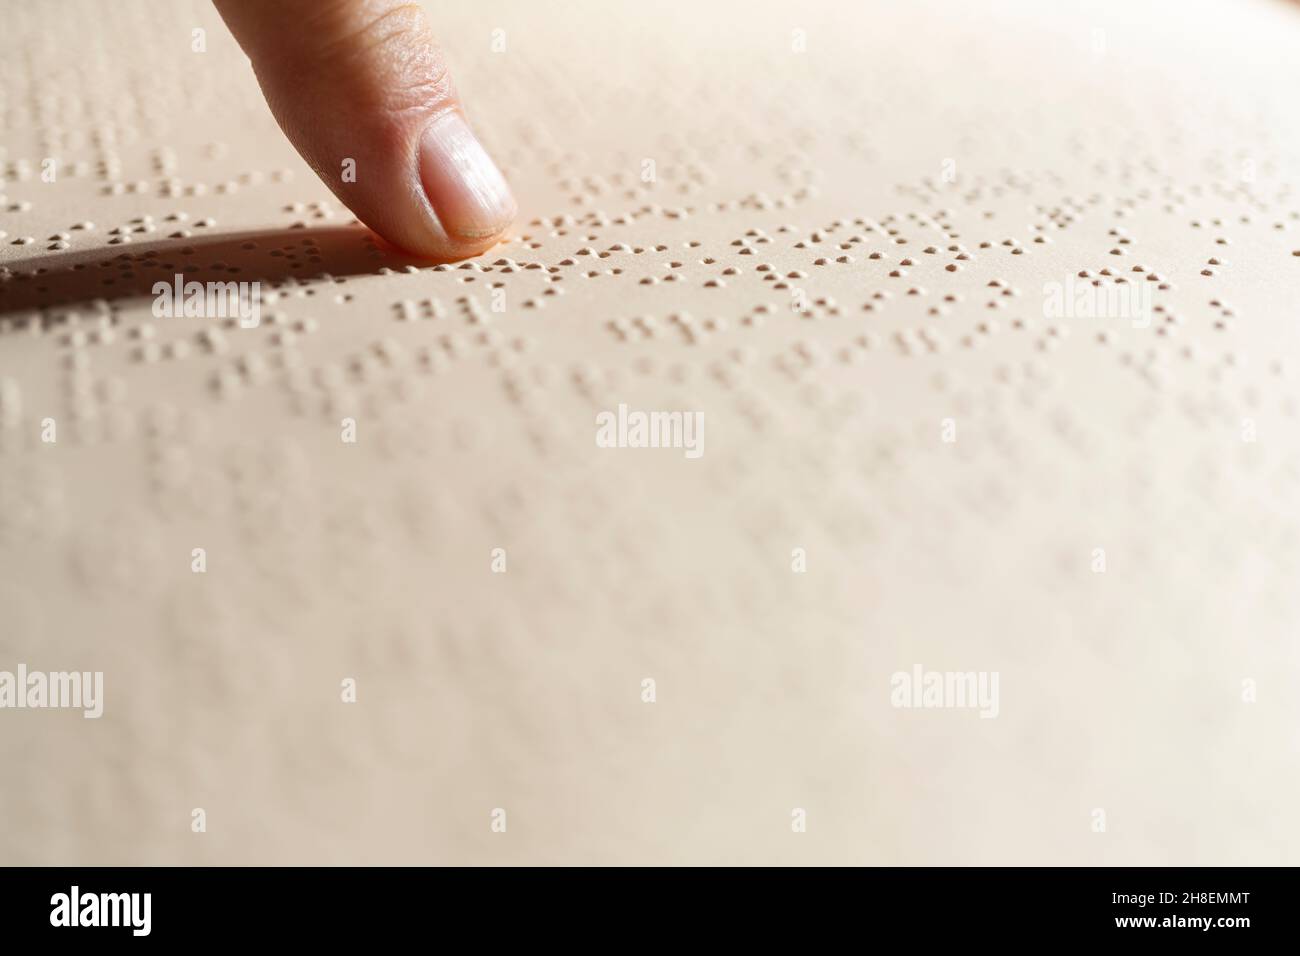 Un doigt après la lecture d'une page écrite en braille, le système de lecture tactile en relief pour les aveugles Banque D'Images